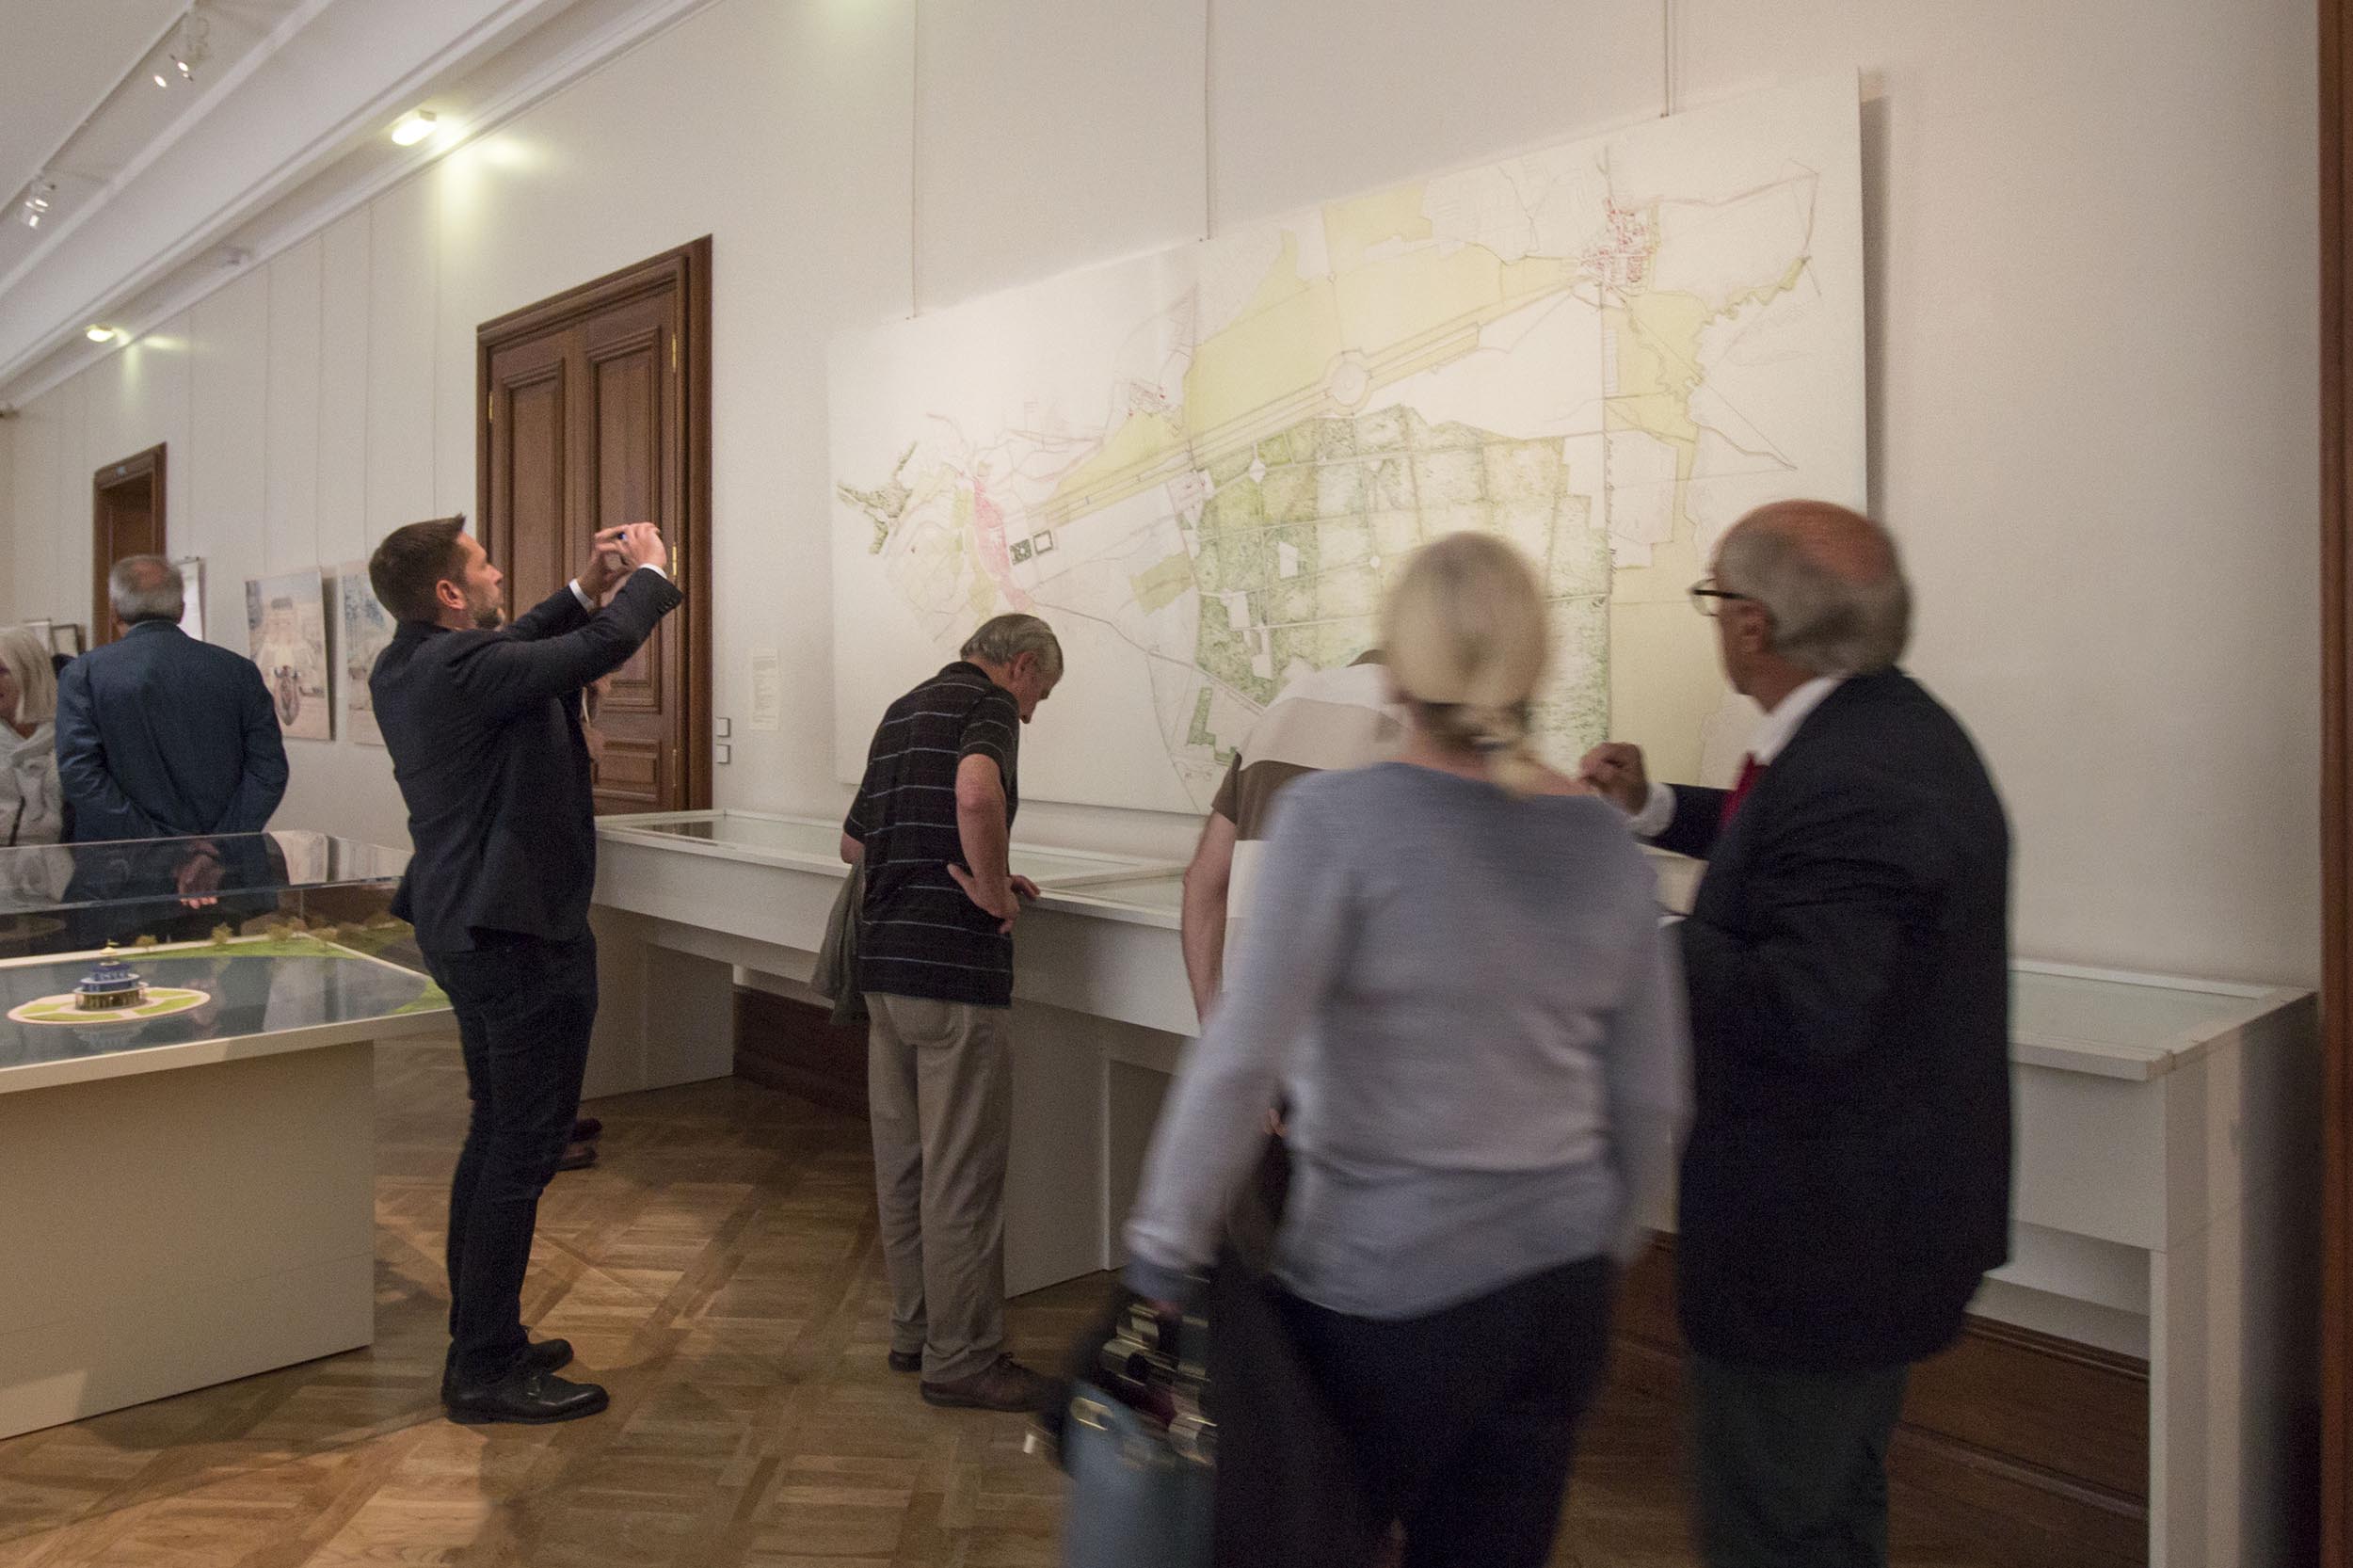 Lors du vernissage de l'exposition, le public regarde le panneau très grand format avec l'ancien plan du parc du château de Saverne